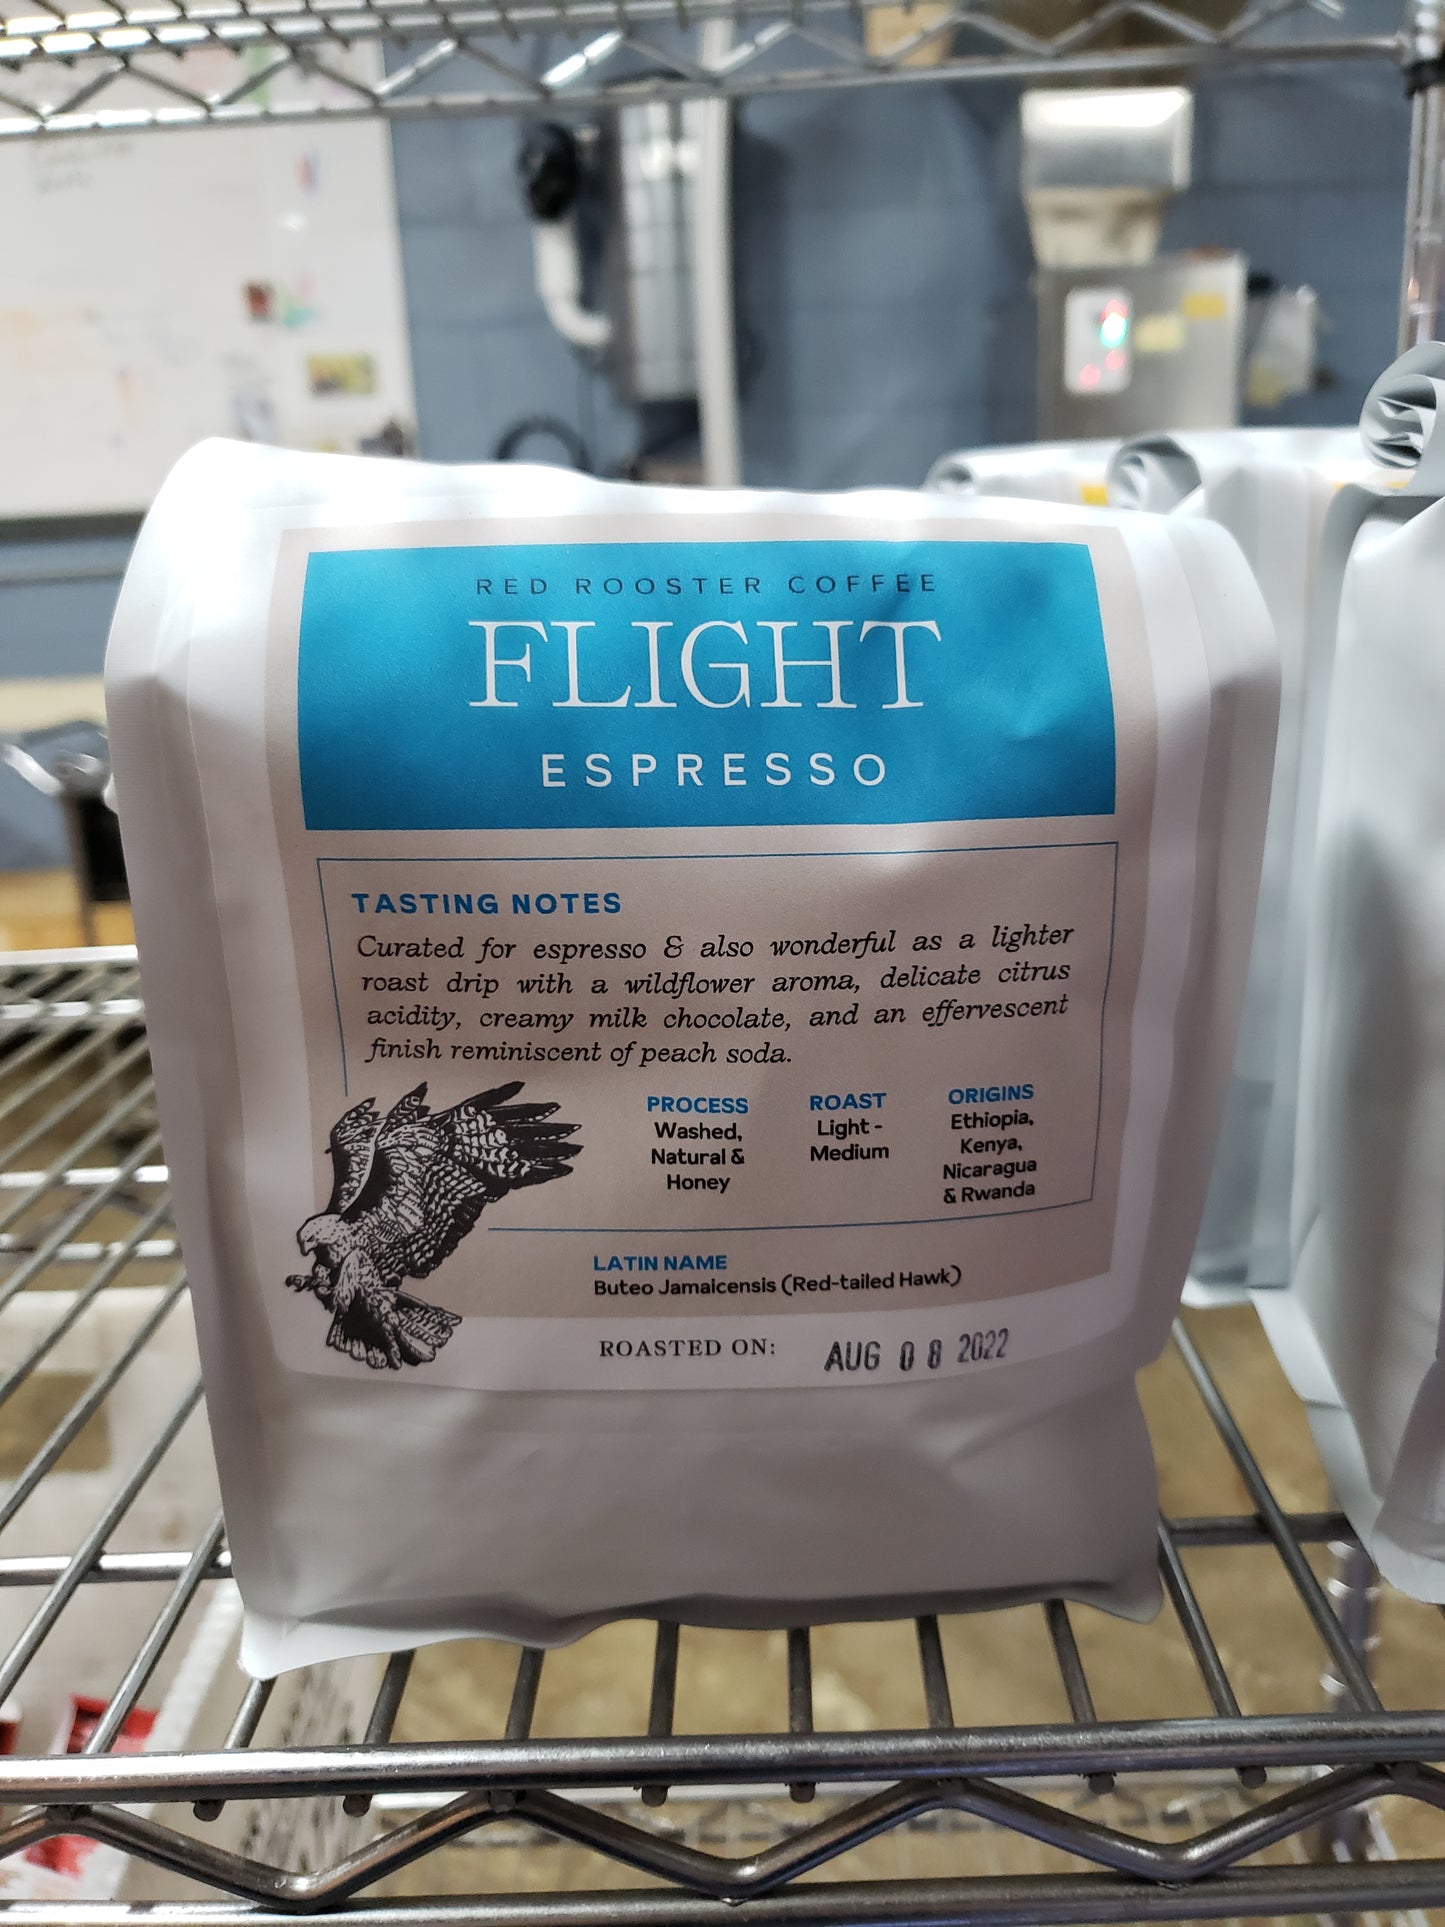 Flight Seasonal Espresso